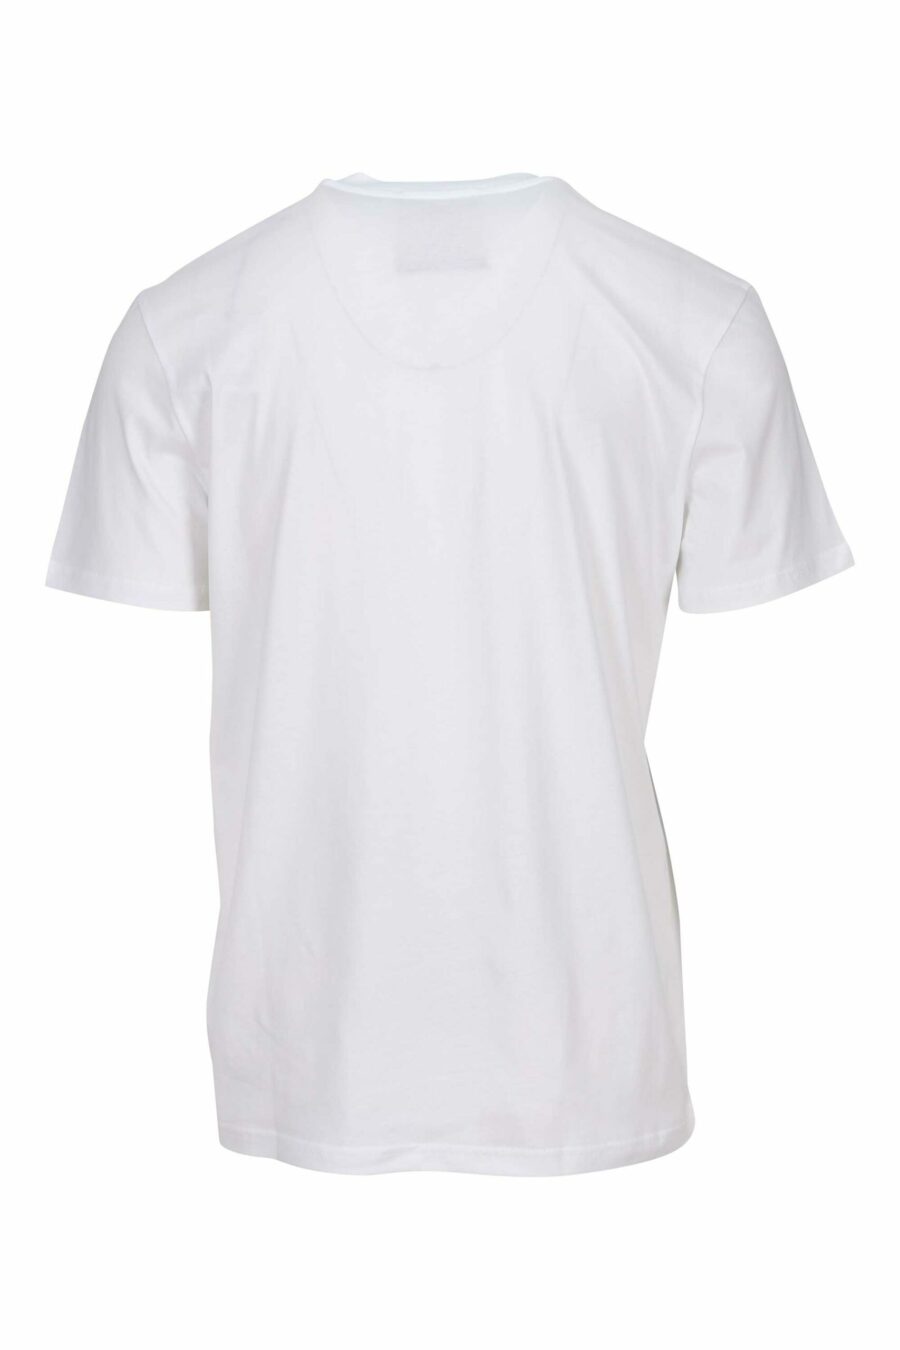 Camiseta blanca "oversize" de algodón orgánico con maxilogo negro clásico - 667113751788 1 scaled